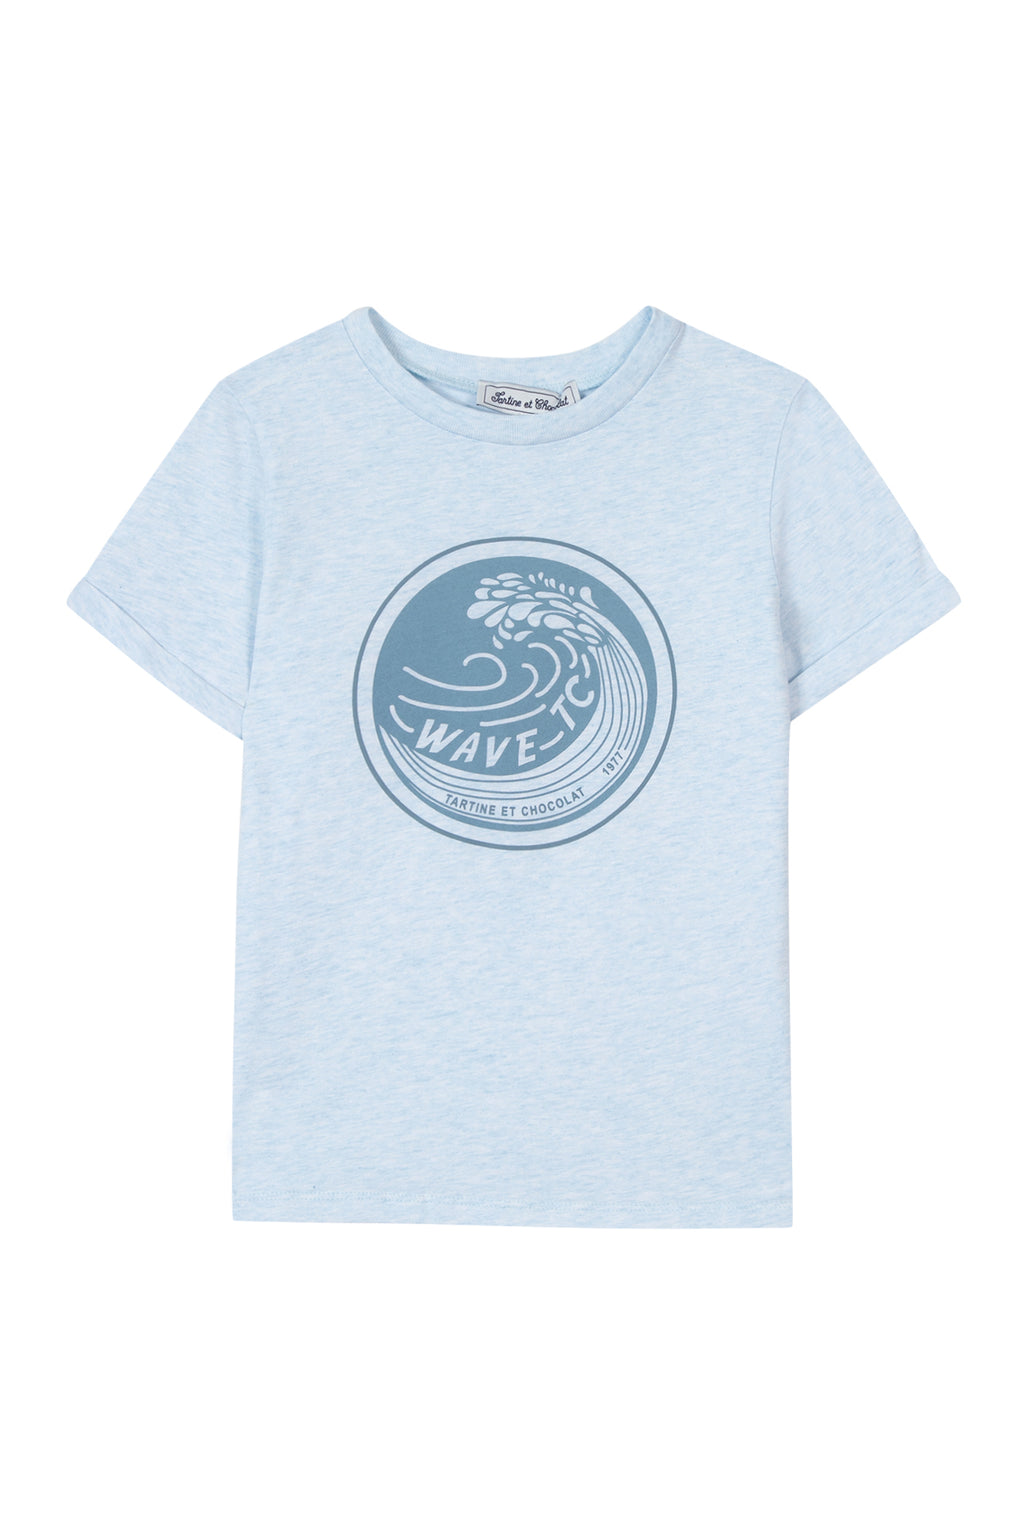 T-shirt - Jersey bleu ciel